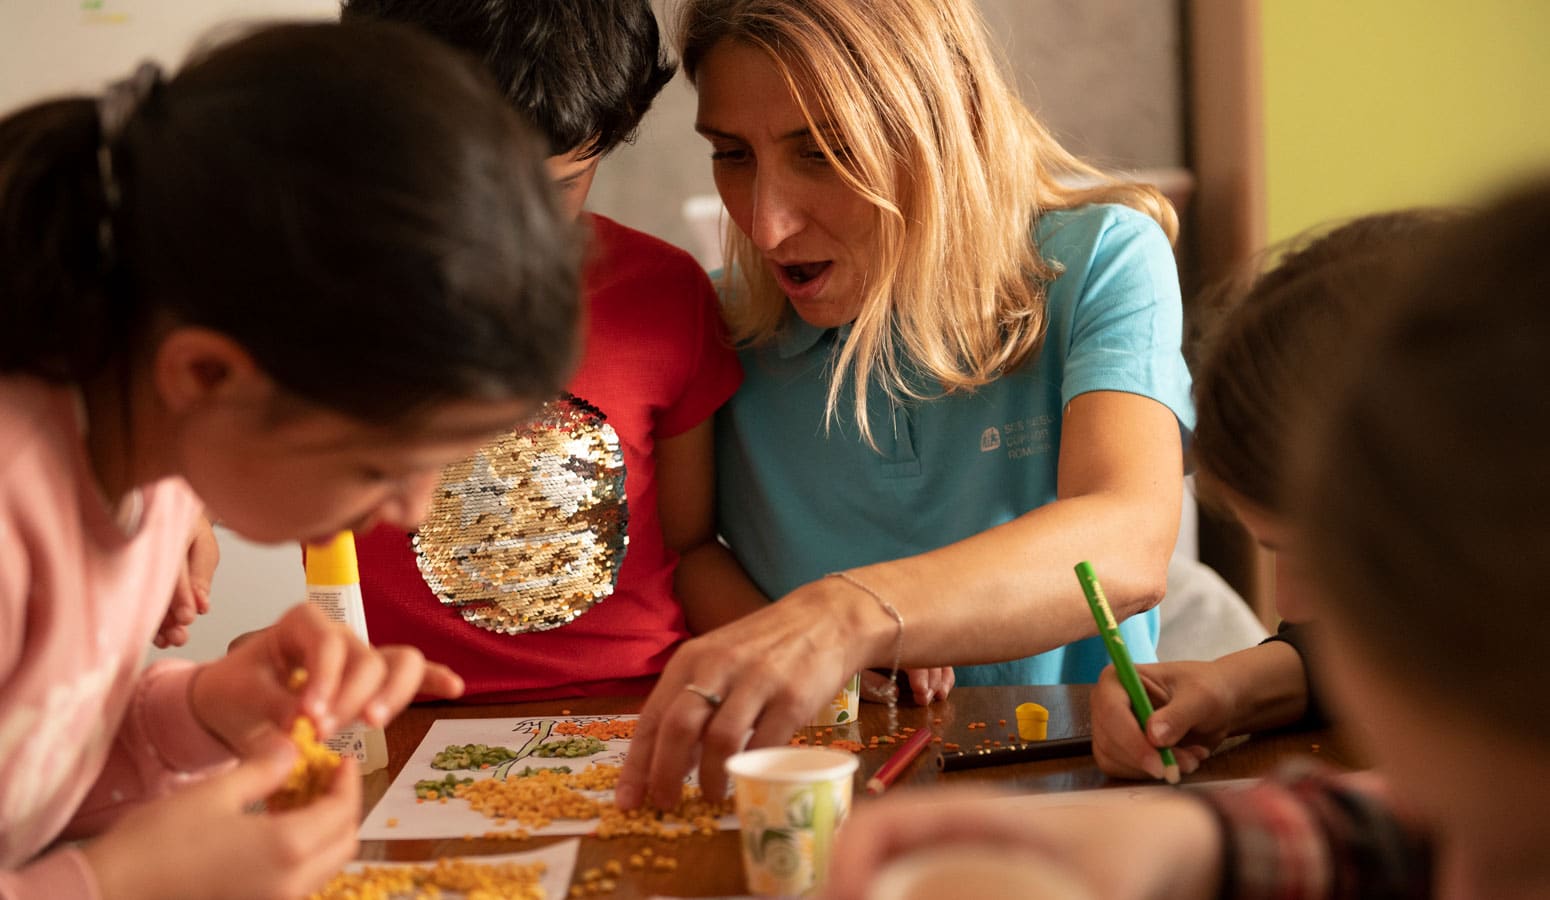 Sosialarbeider fra SOS-barnebyer med lyst hår og blå t-skjorte med logo, spiller spill med tre barn. Foto: Katerina Ilievska